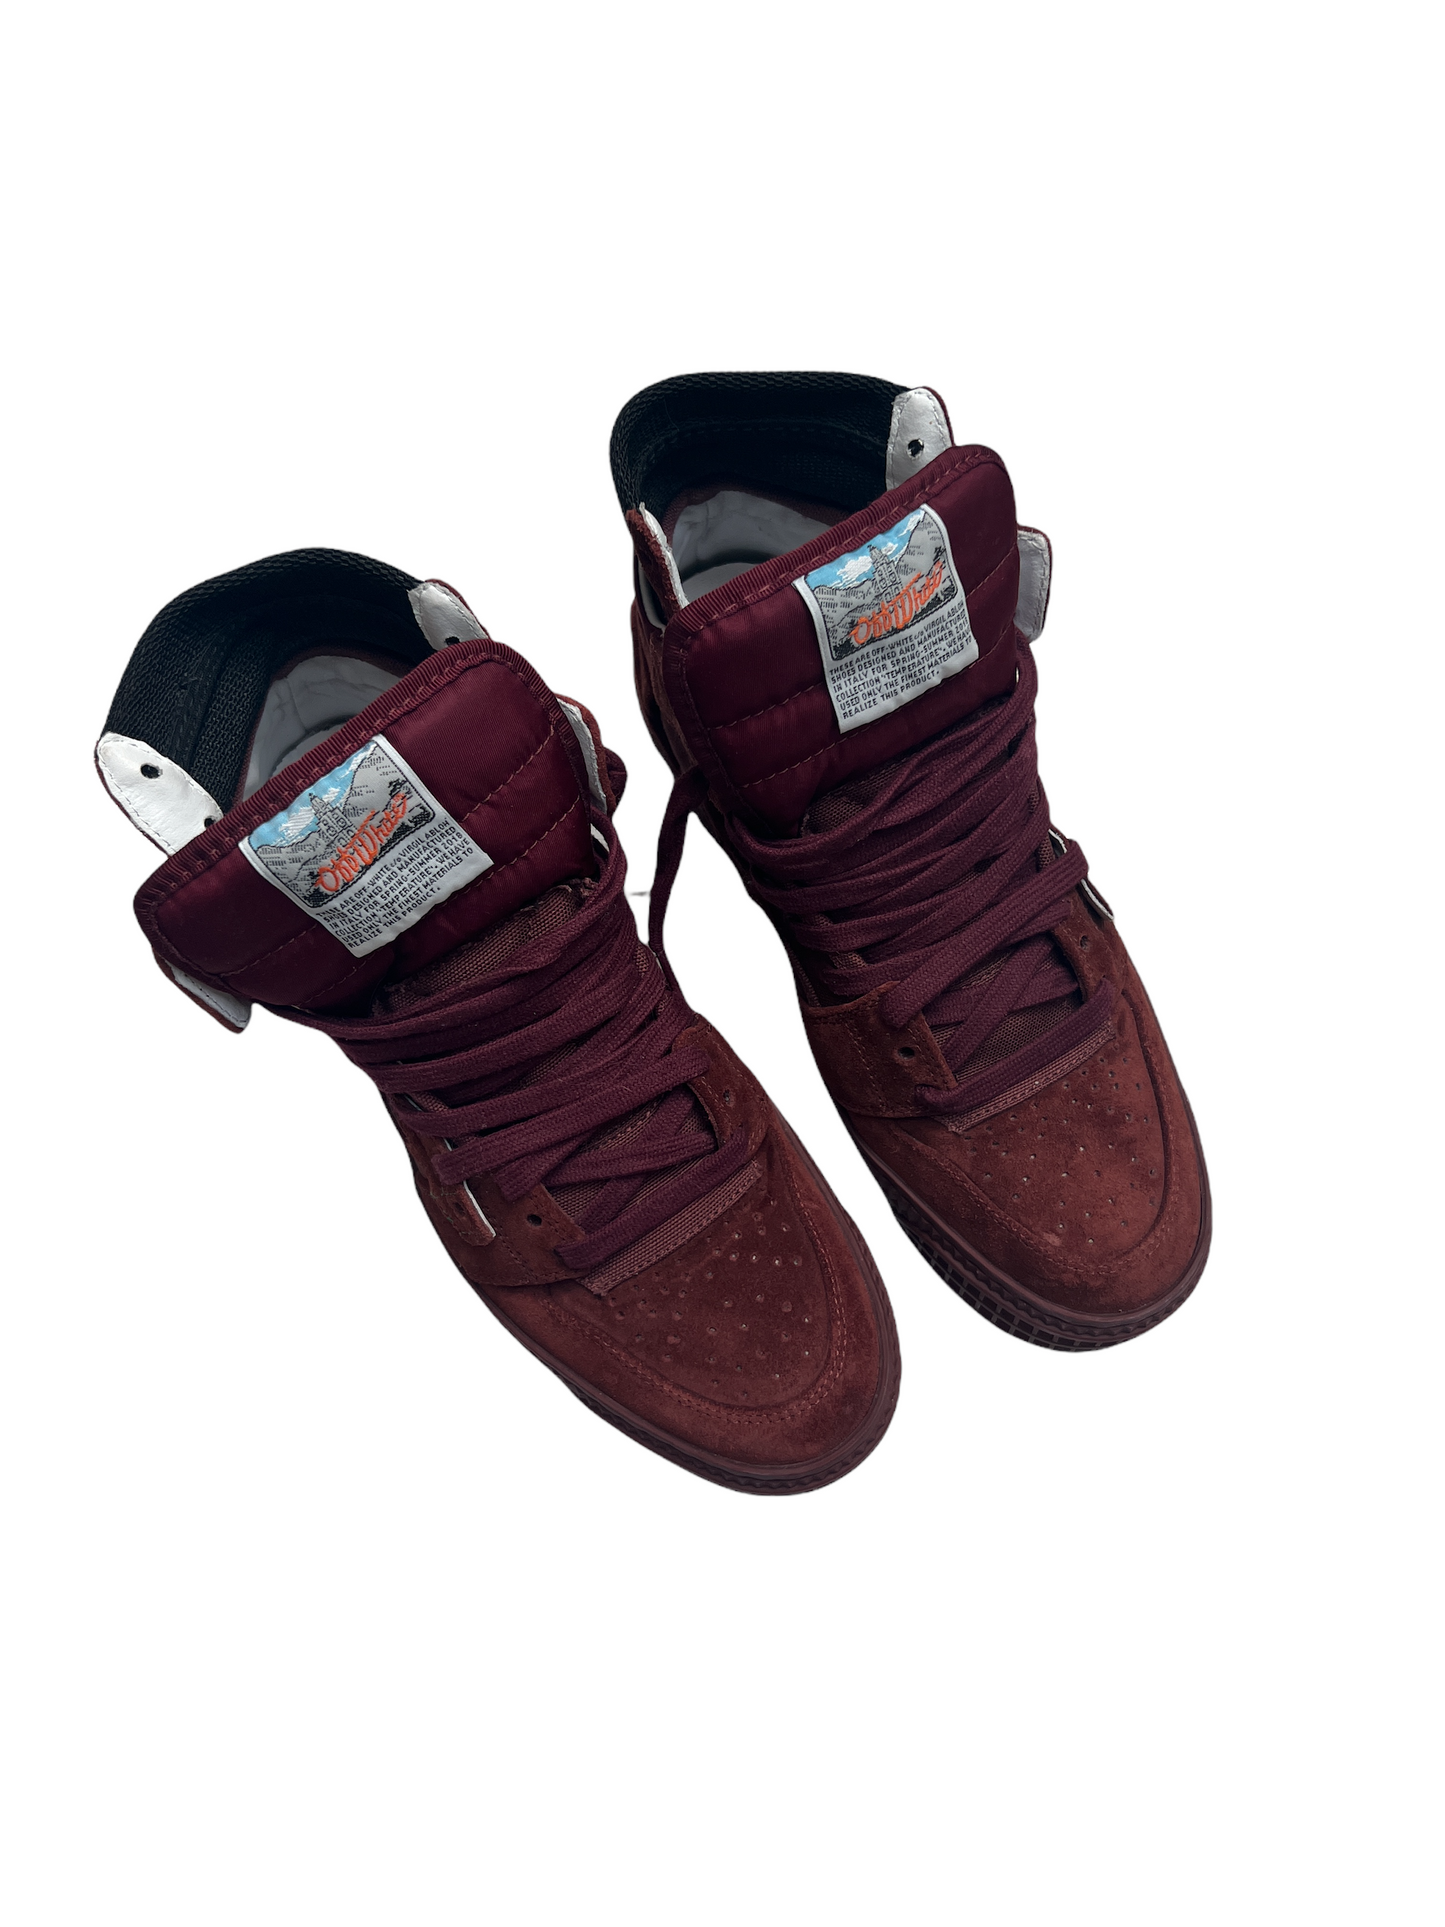 Burgundy Suede Sneakers - 8